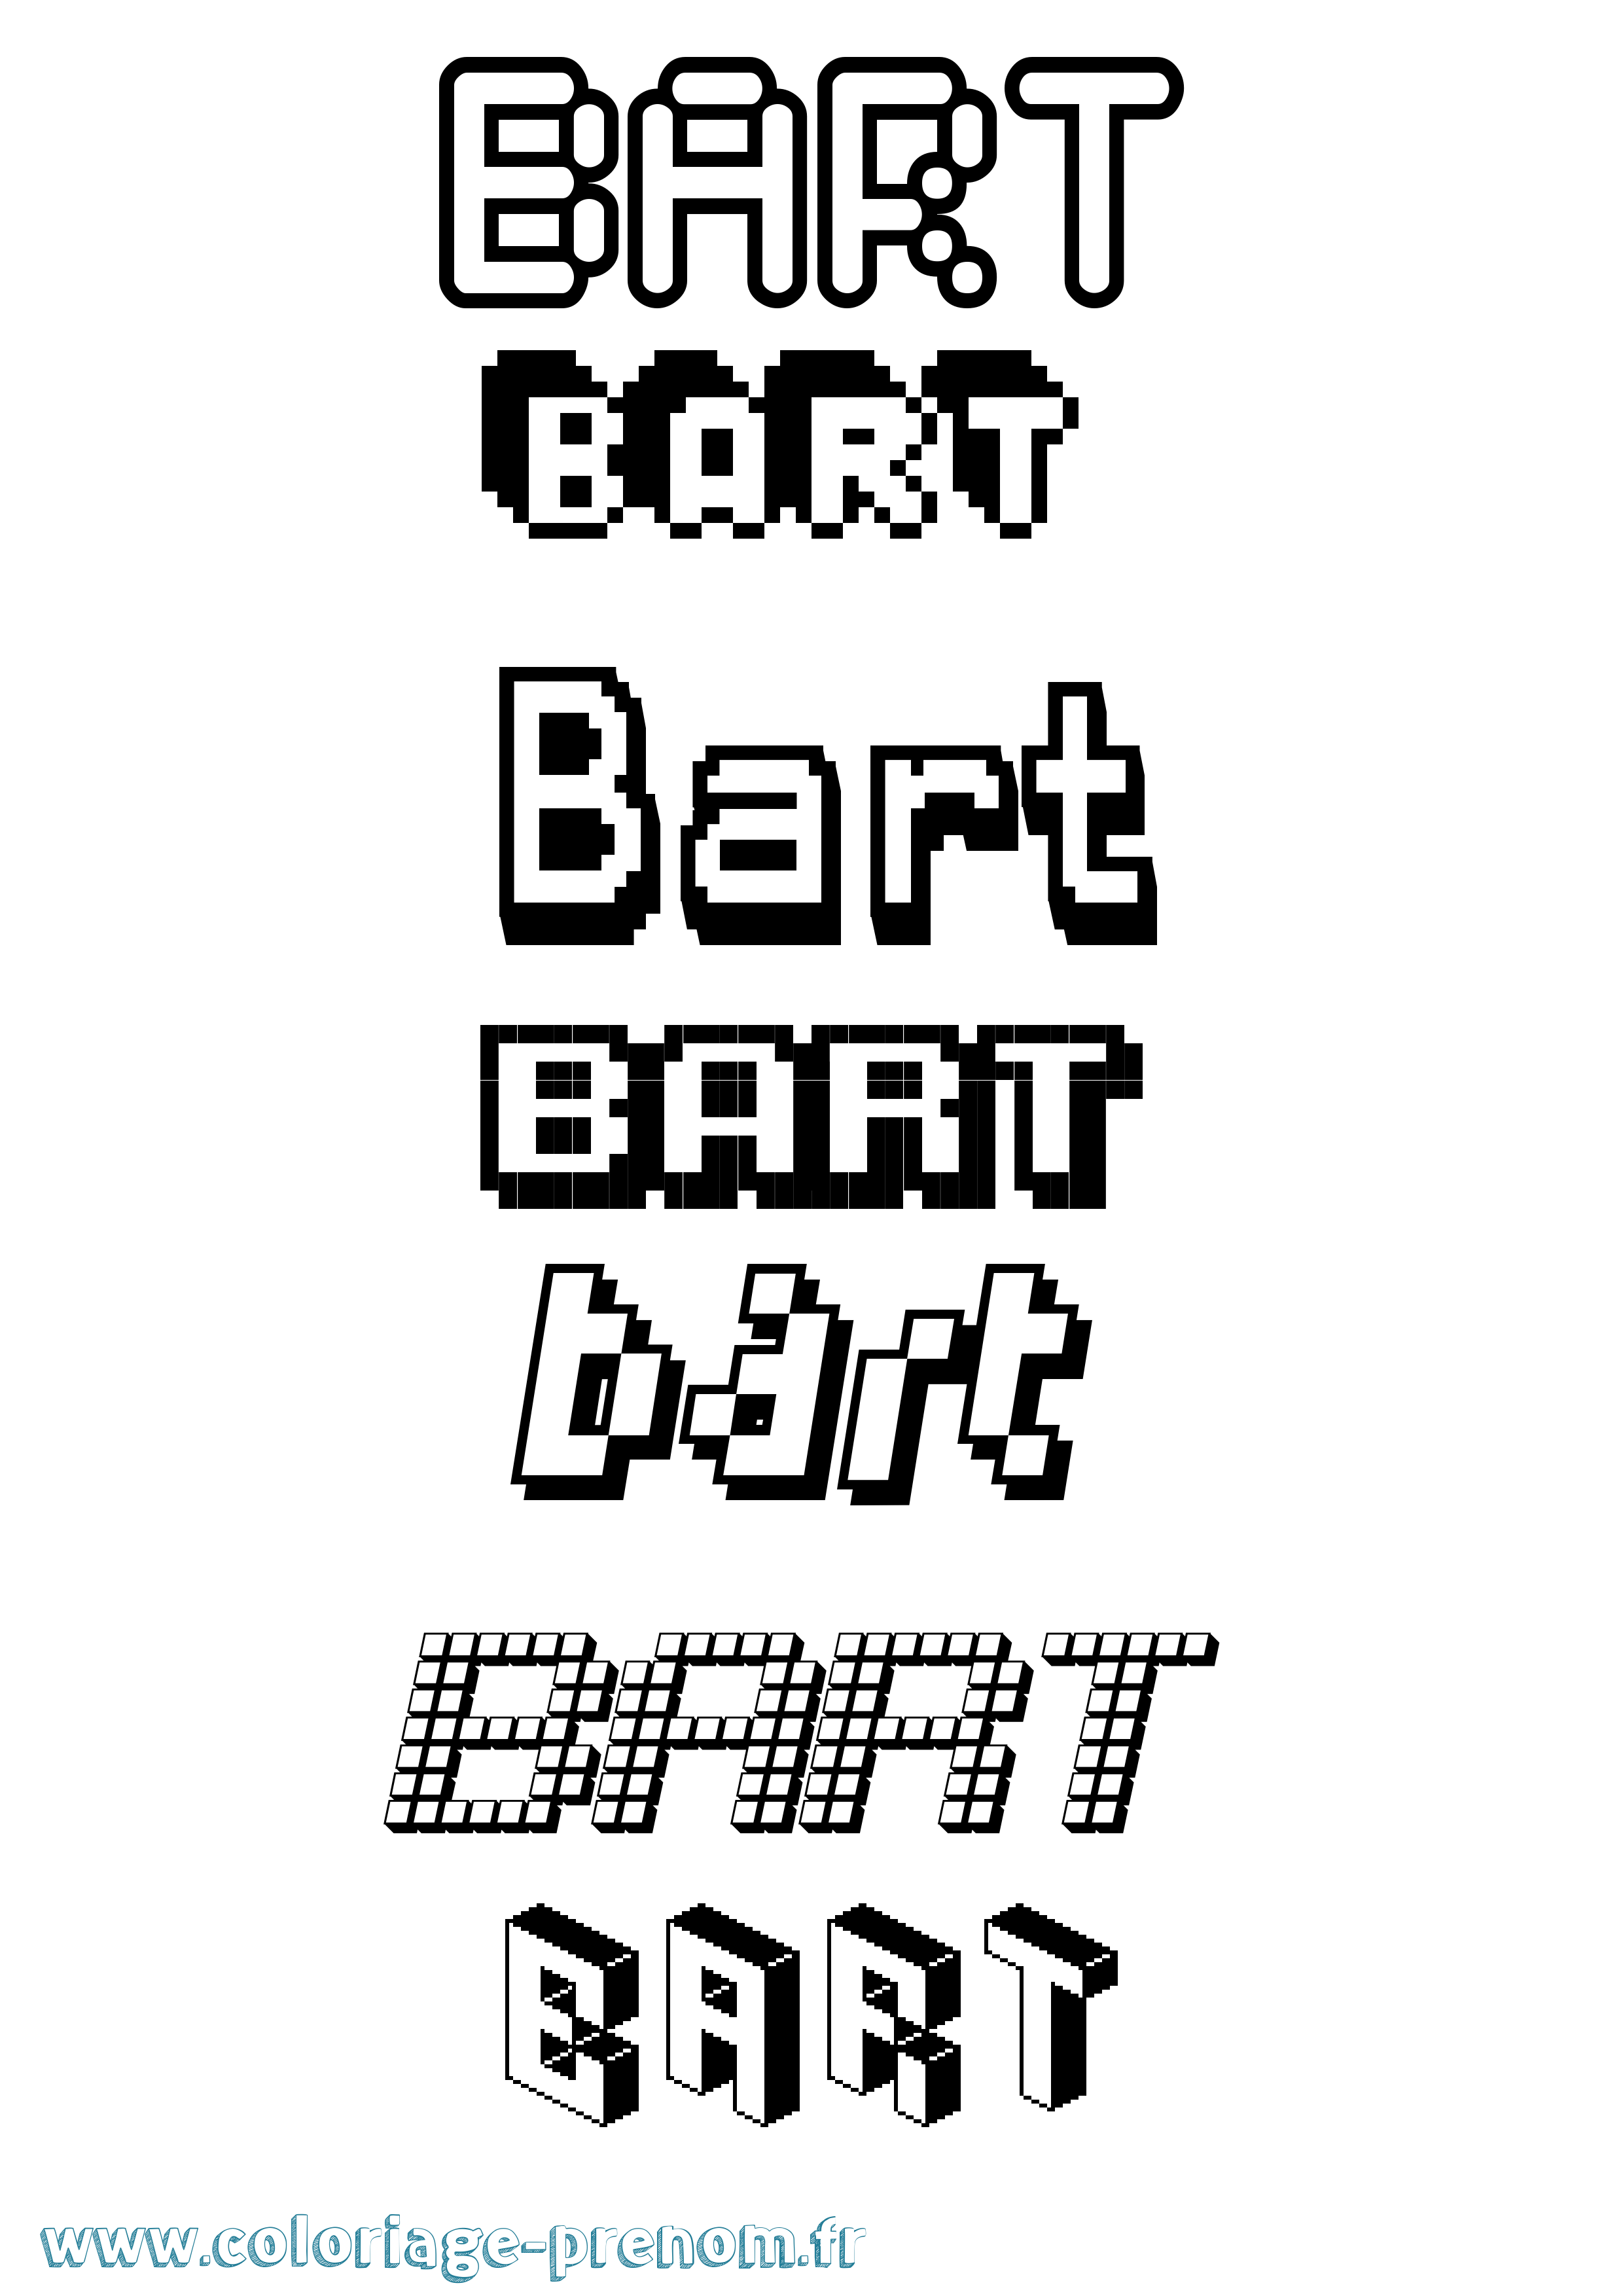 Coloriage prénom Bart Pixel